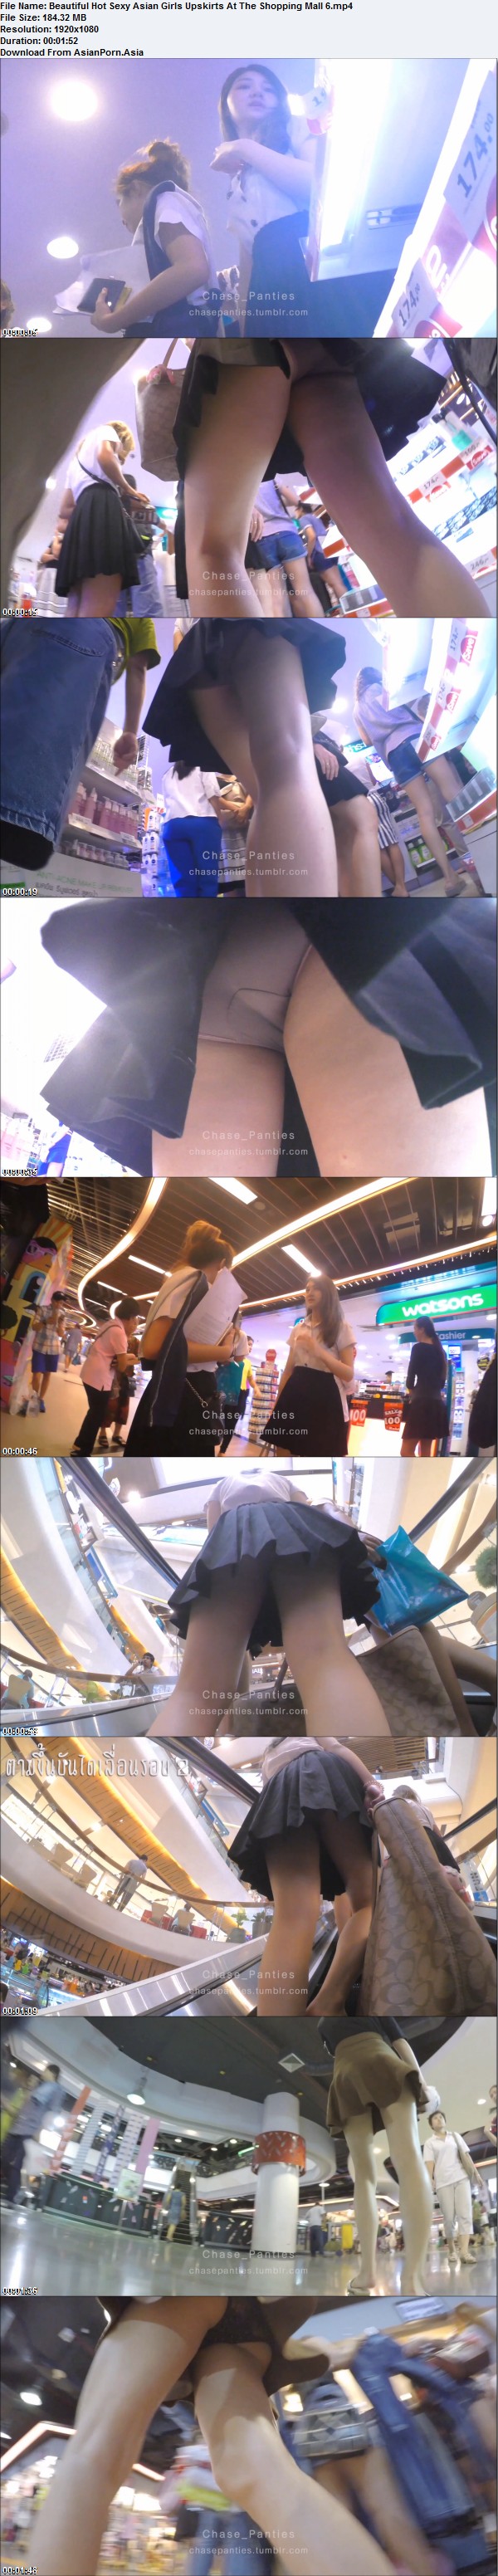 Beautiful Hot Sexy Asian Girls Upskirts At The Shopping Mall 6.jpg